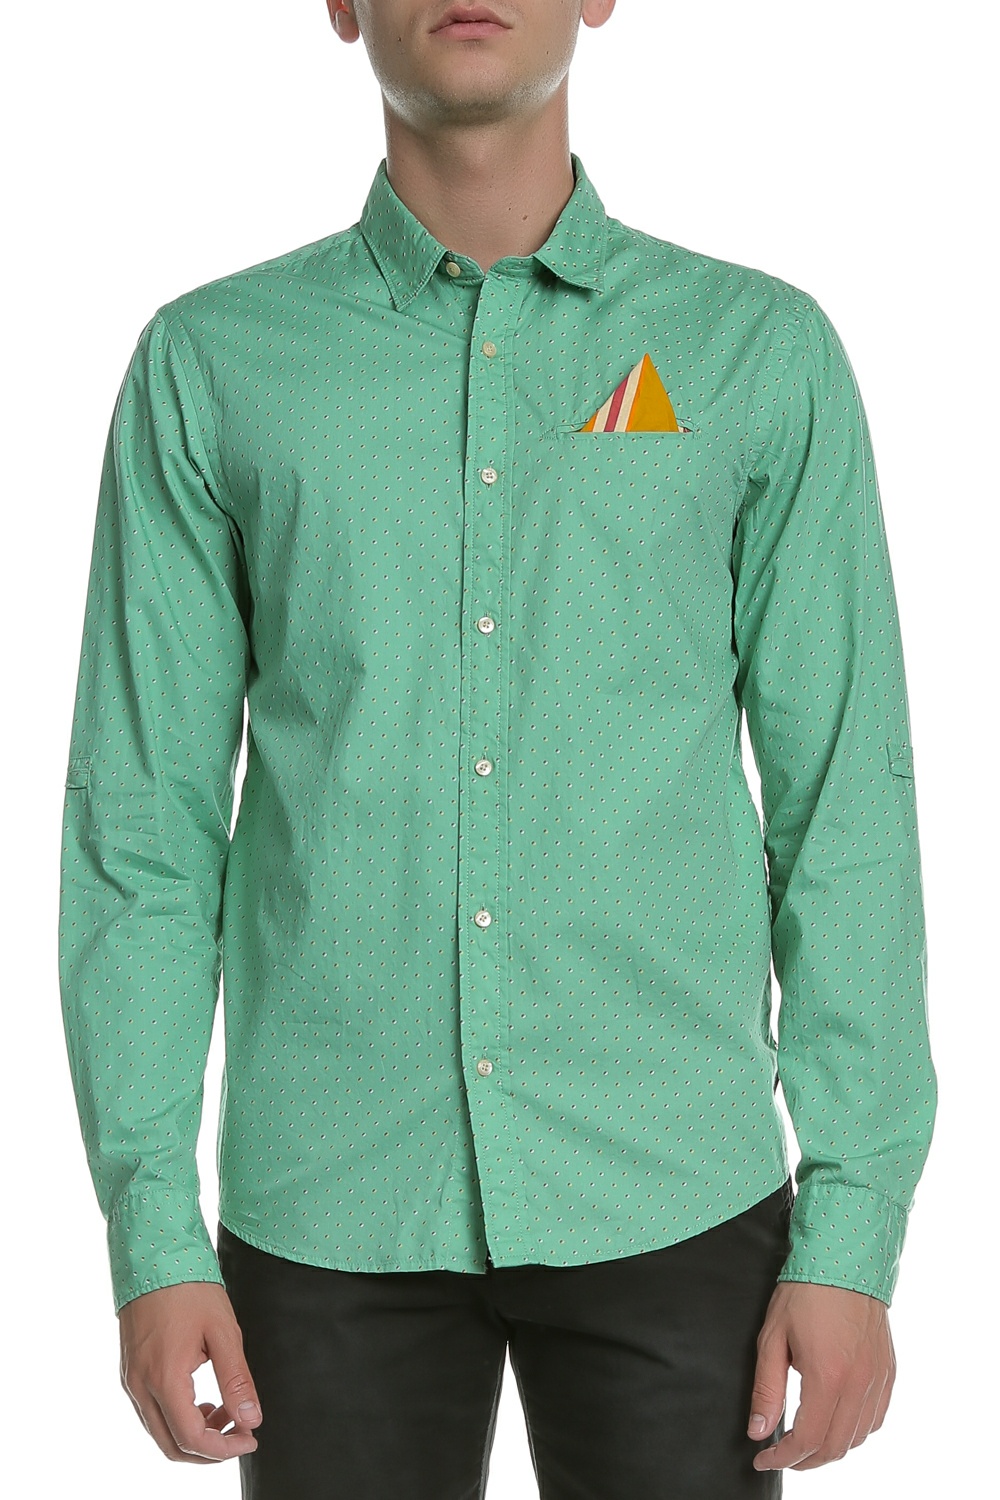 SCOTCH & SODA - Ανδρικό μακρυμάνικο πουκάμισο Scotch & Soda πράσινο πουά Ανδρικά/Ρούχα/Πουκάμισα/Μακρυμάνικα